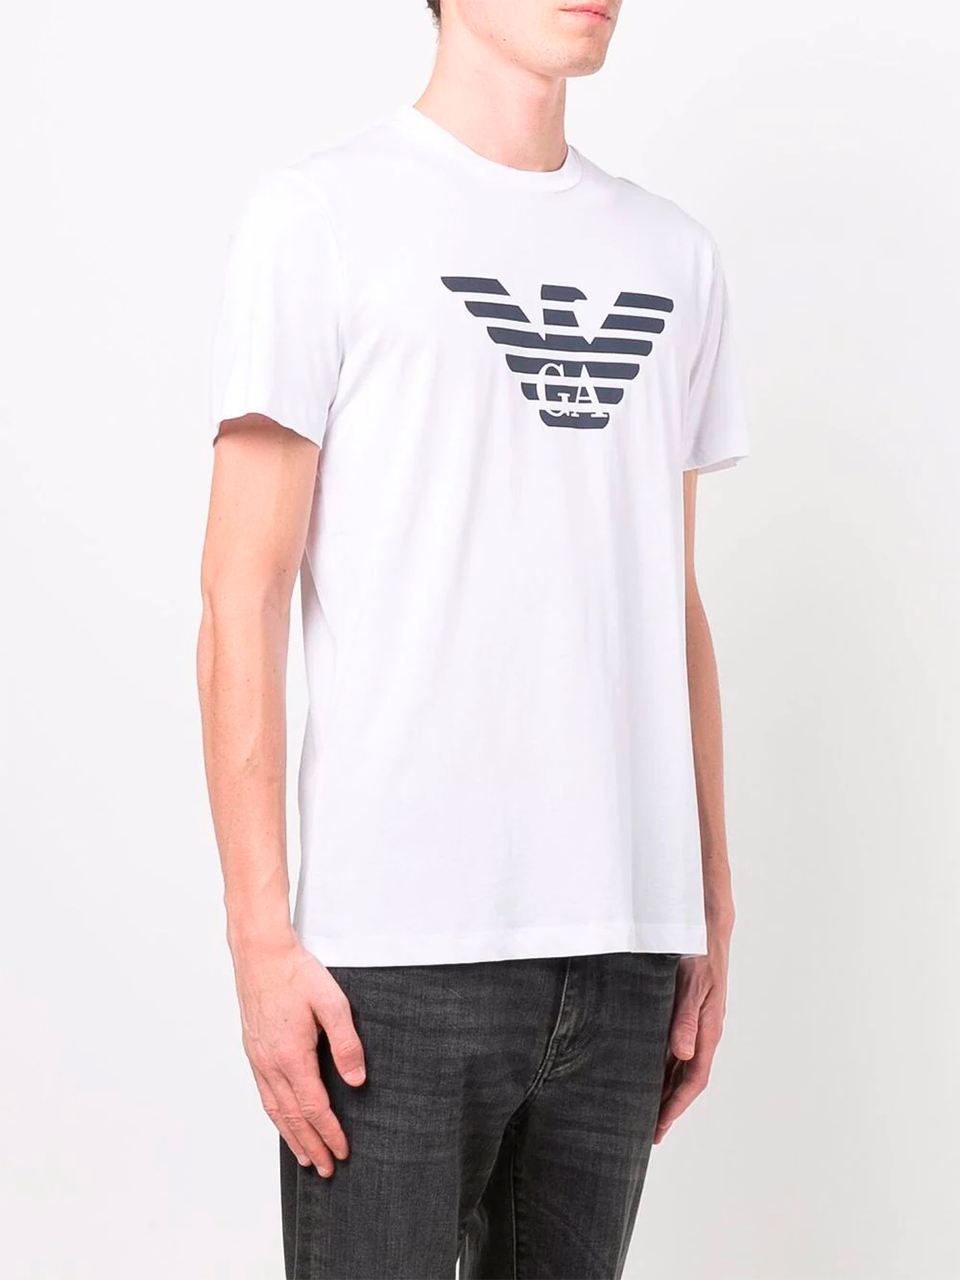 Imagem de: Camiseta Emporio Armani Branca com Estampa